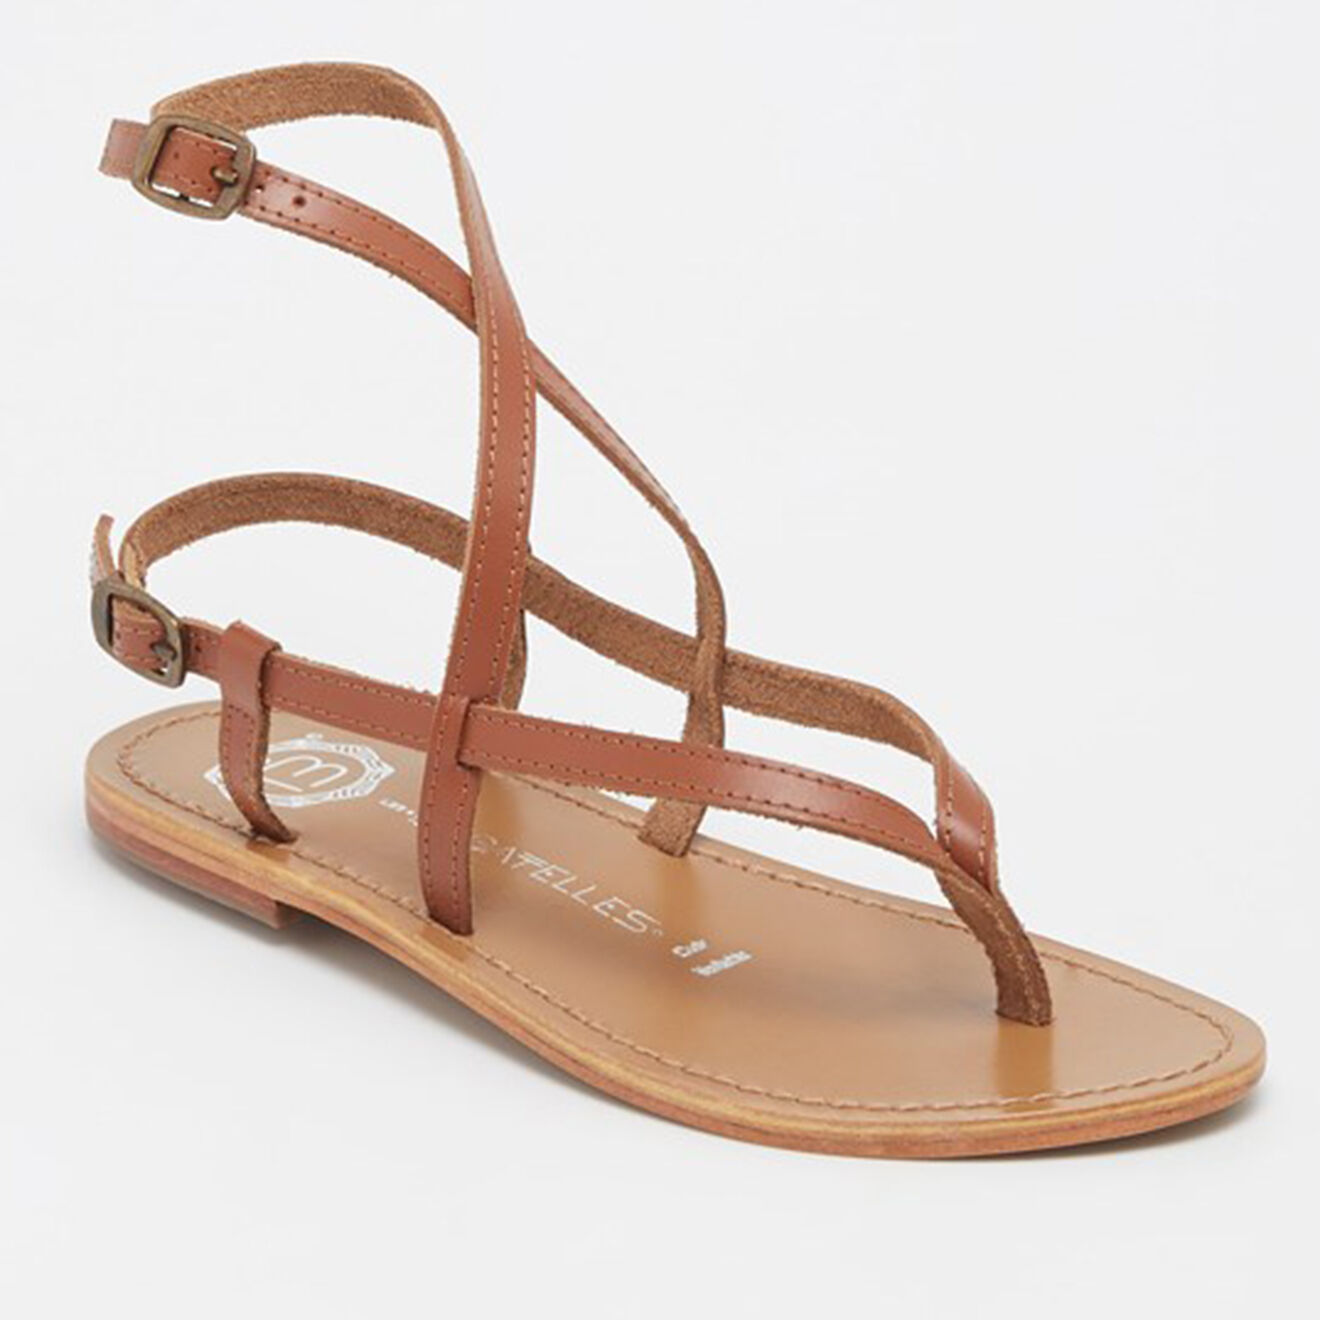 les bagatelles - sandales en cuir union camel/marron